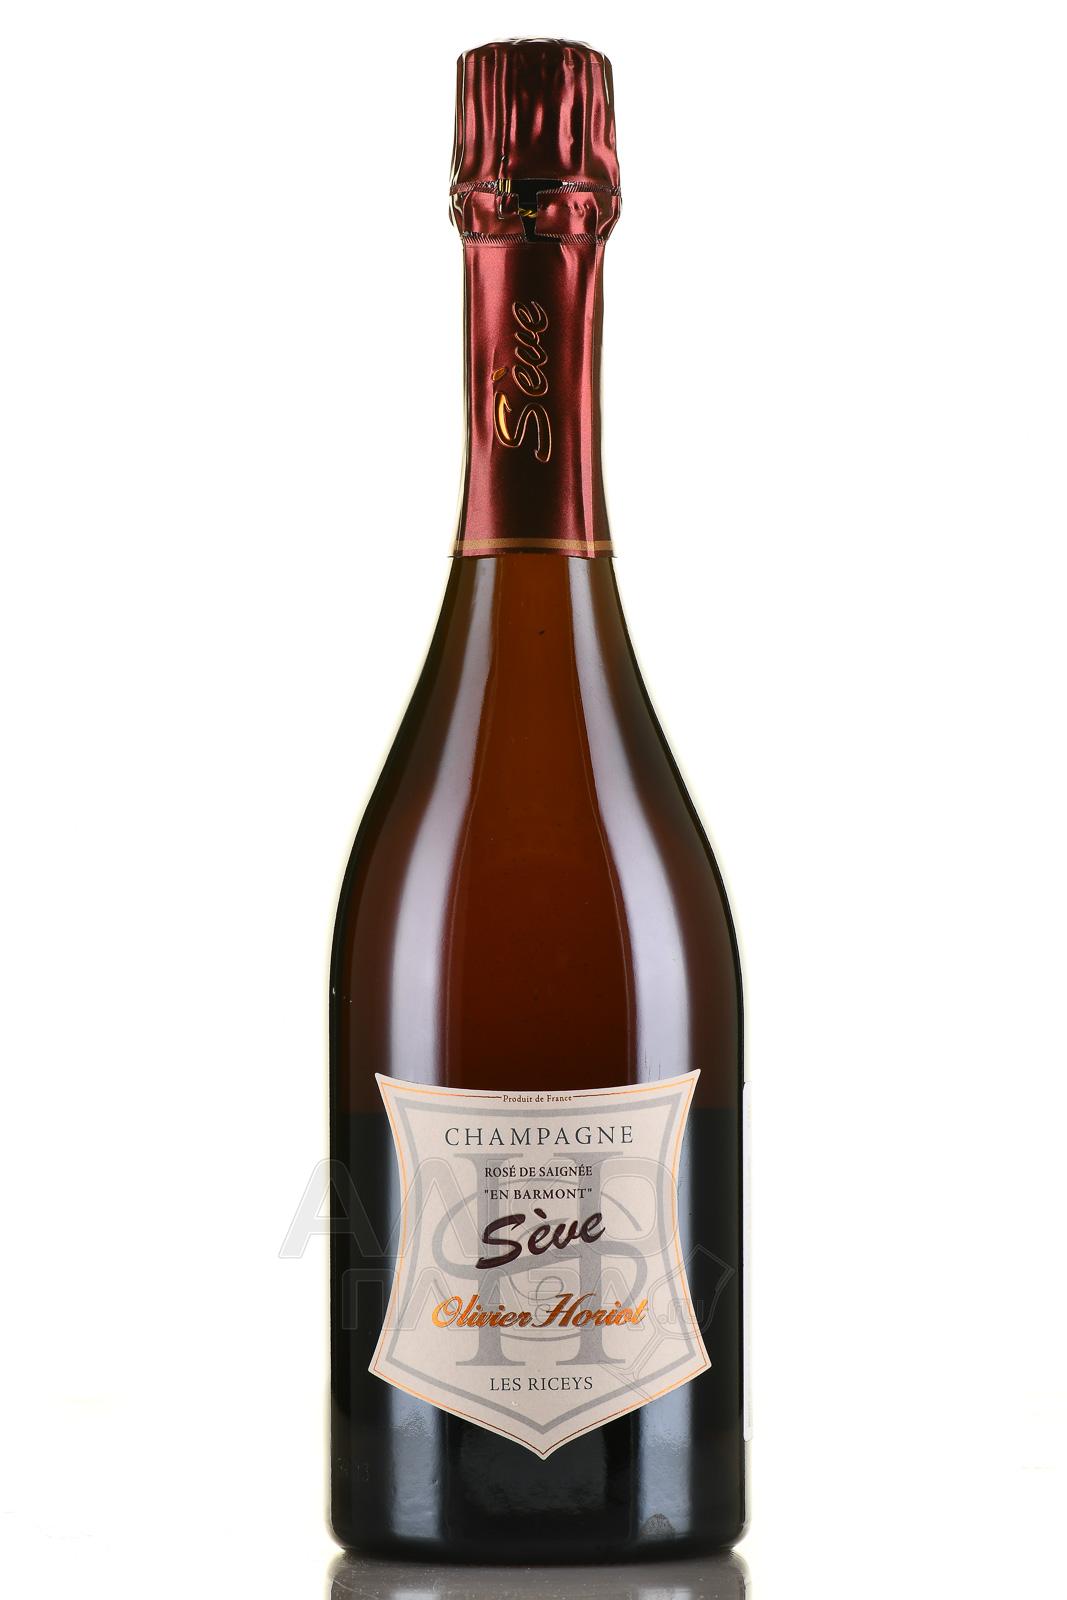 Olivier Horiot En Barmont Seve Rose de Saignee - шампанское Шампань Оливье Орио Сэв Розе де Сэне Ан Бармон 0.75 л розовое экстра брют